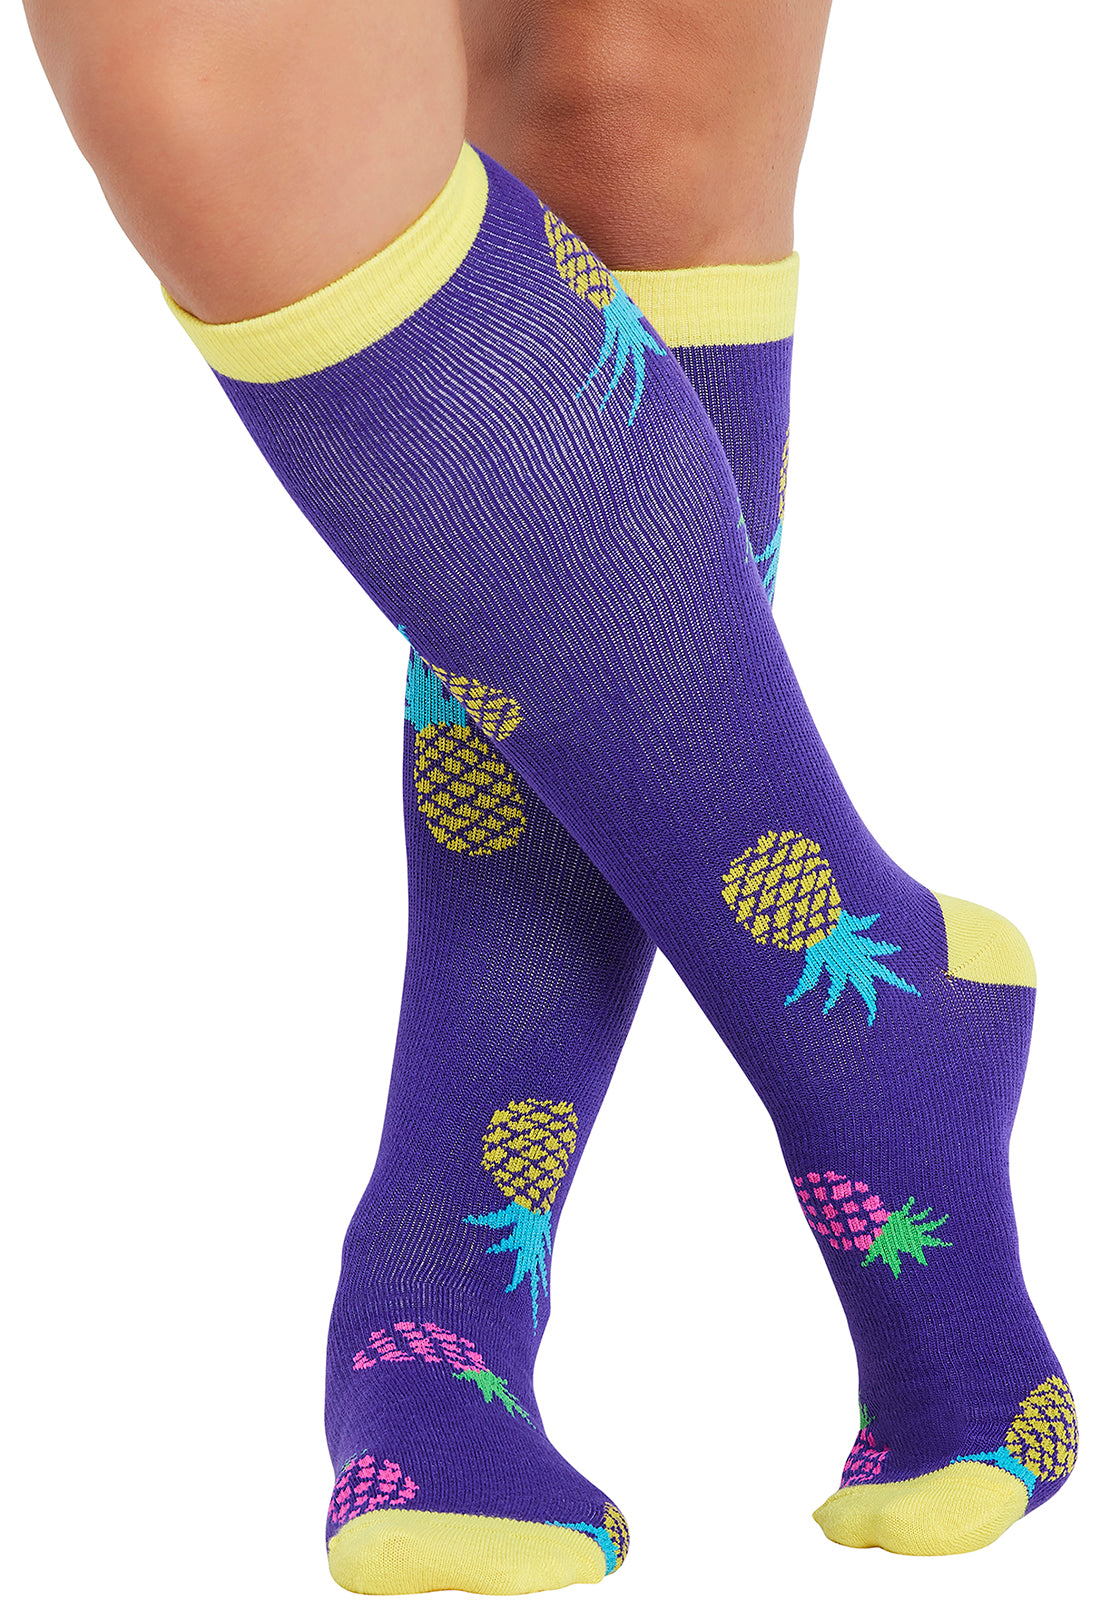 Regular Fit - Compression Socks 10-15mmHg Compression Socks Cherokee Legwear Pineapple Toss  